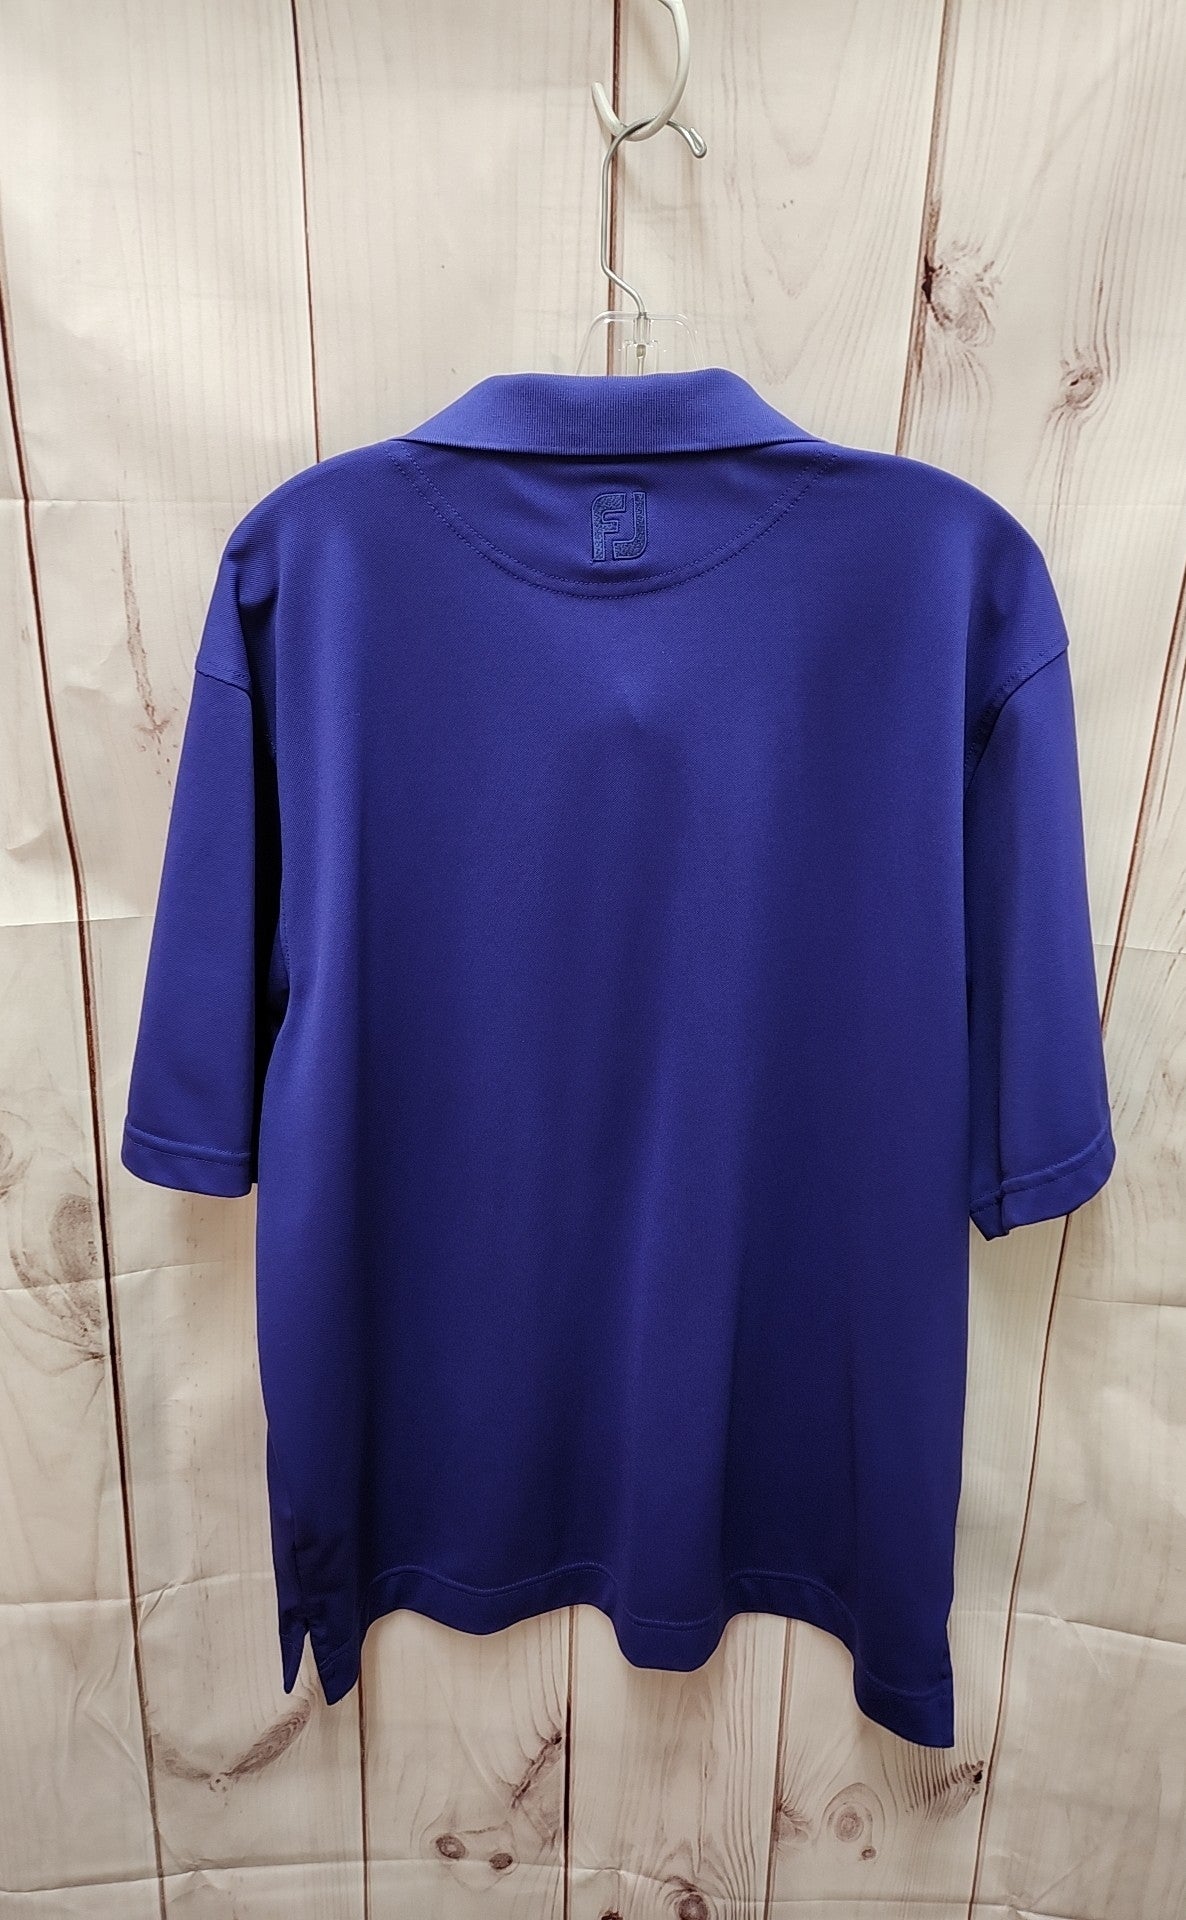 FJ Men's Size L Purple Shirt